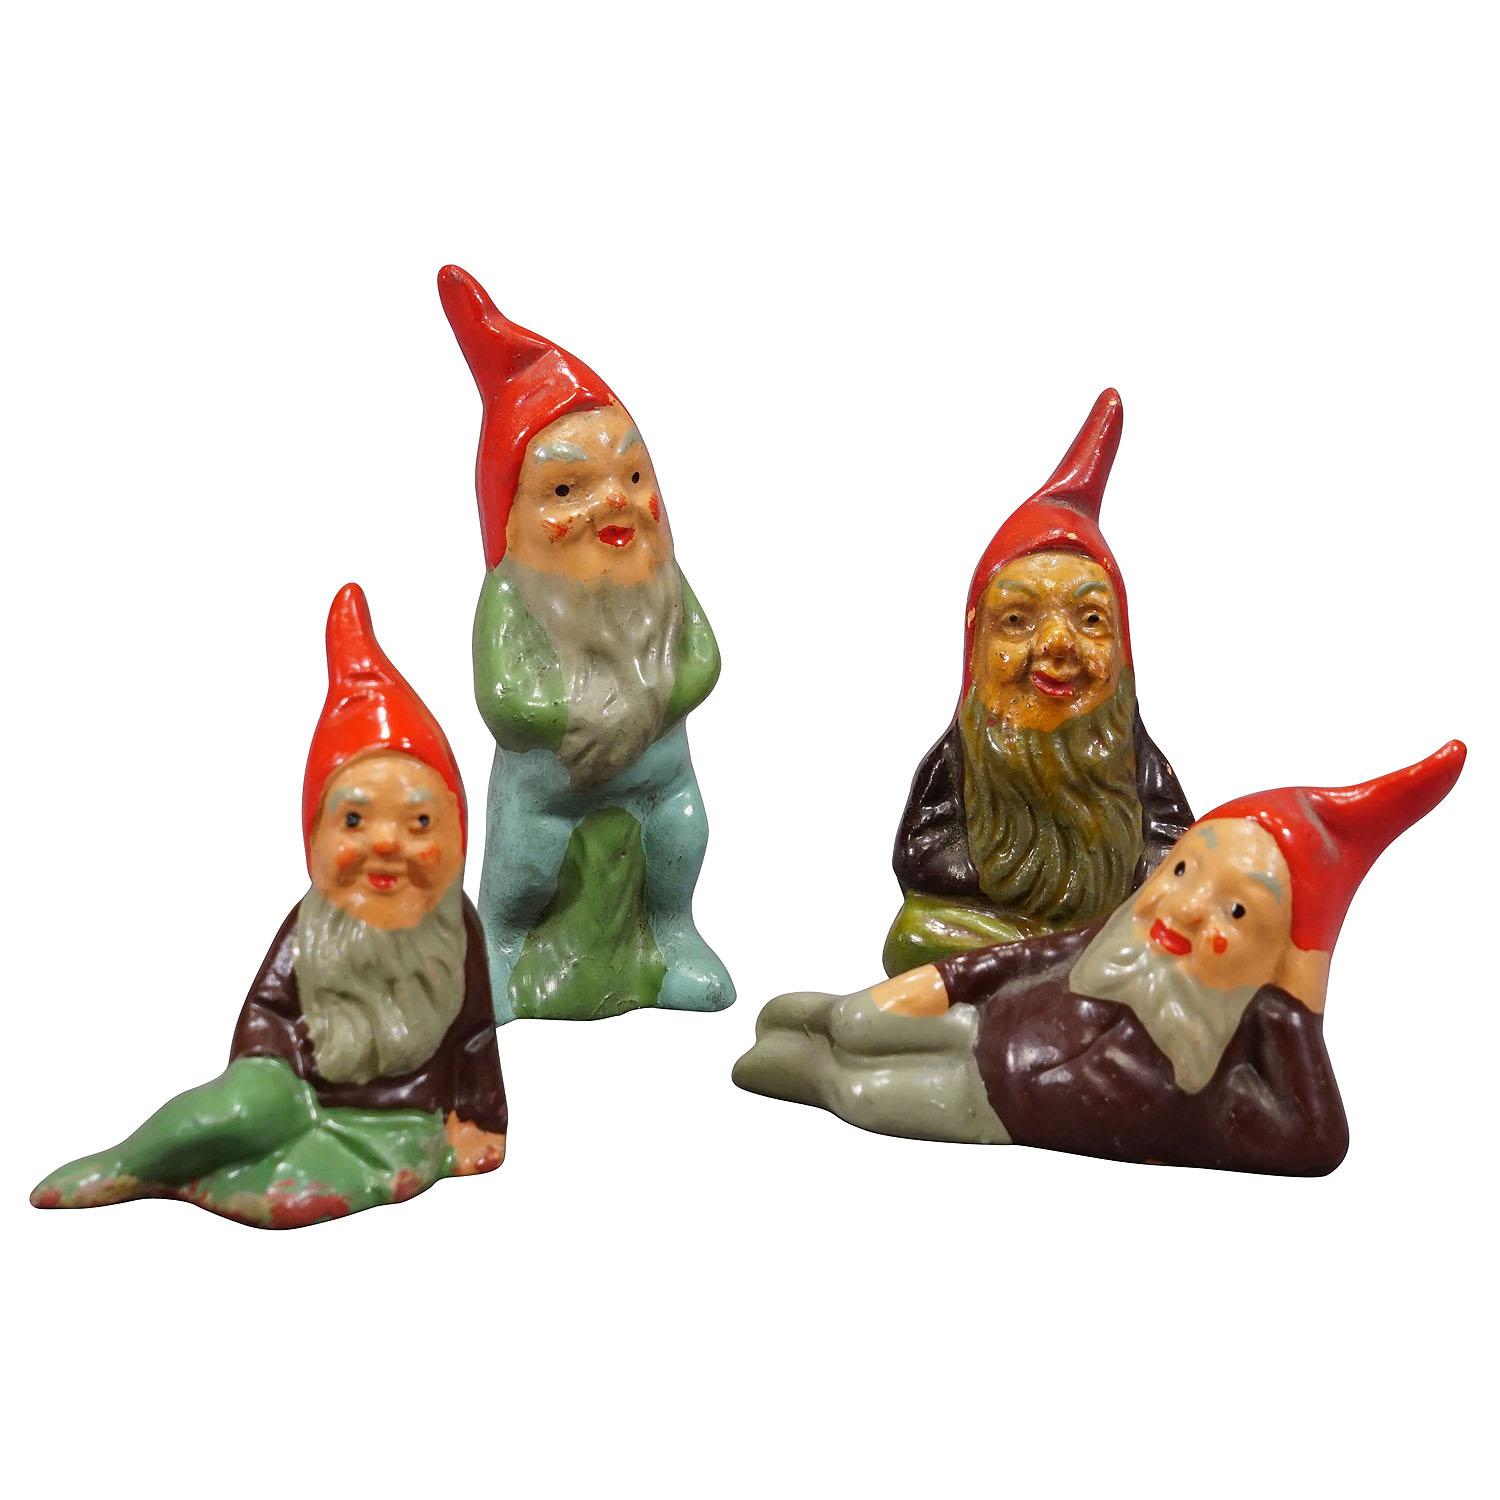 Lot of Four Tiny Terrakotta-Garten Gnomes, Deutschland ca. 1950er Jahre

Ein skurriles Set von vier kleinen Gartenzwergen, hergestellt in Deutschland ca. 1950er Jahre, wahrscheinlich von Heissner. Sie sind aus Terrakotta gefertigt und von Hand mit